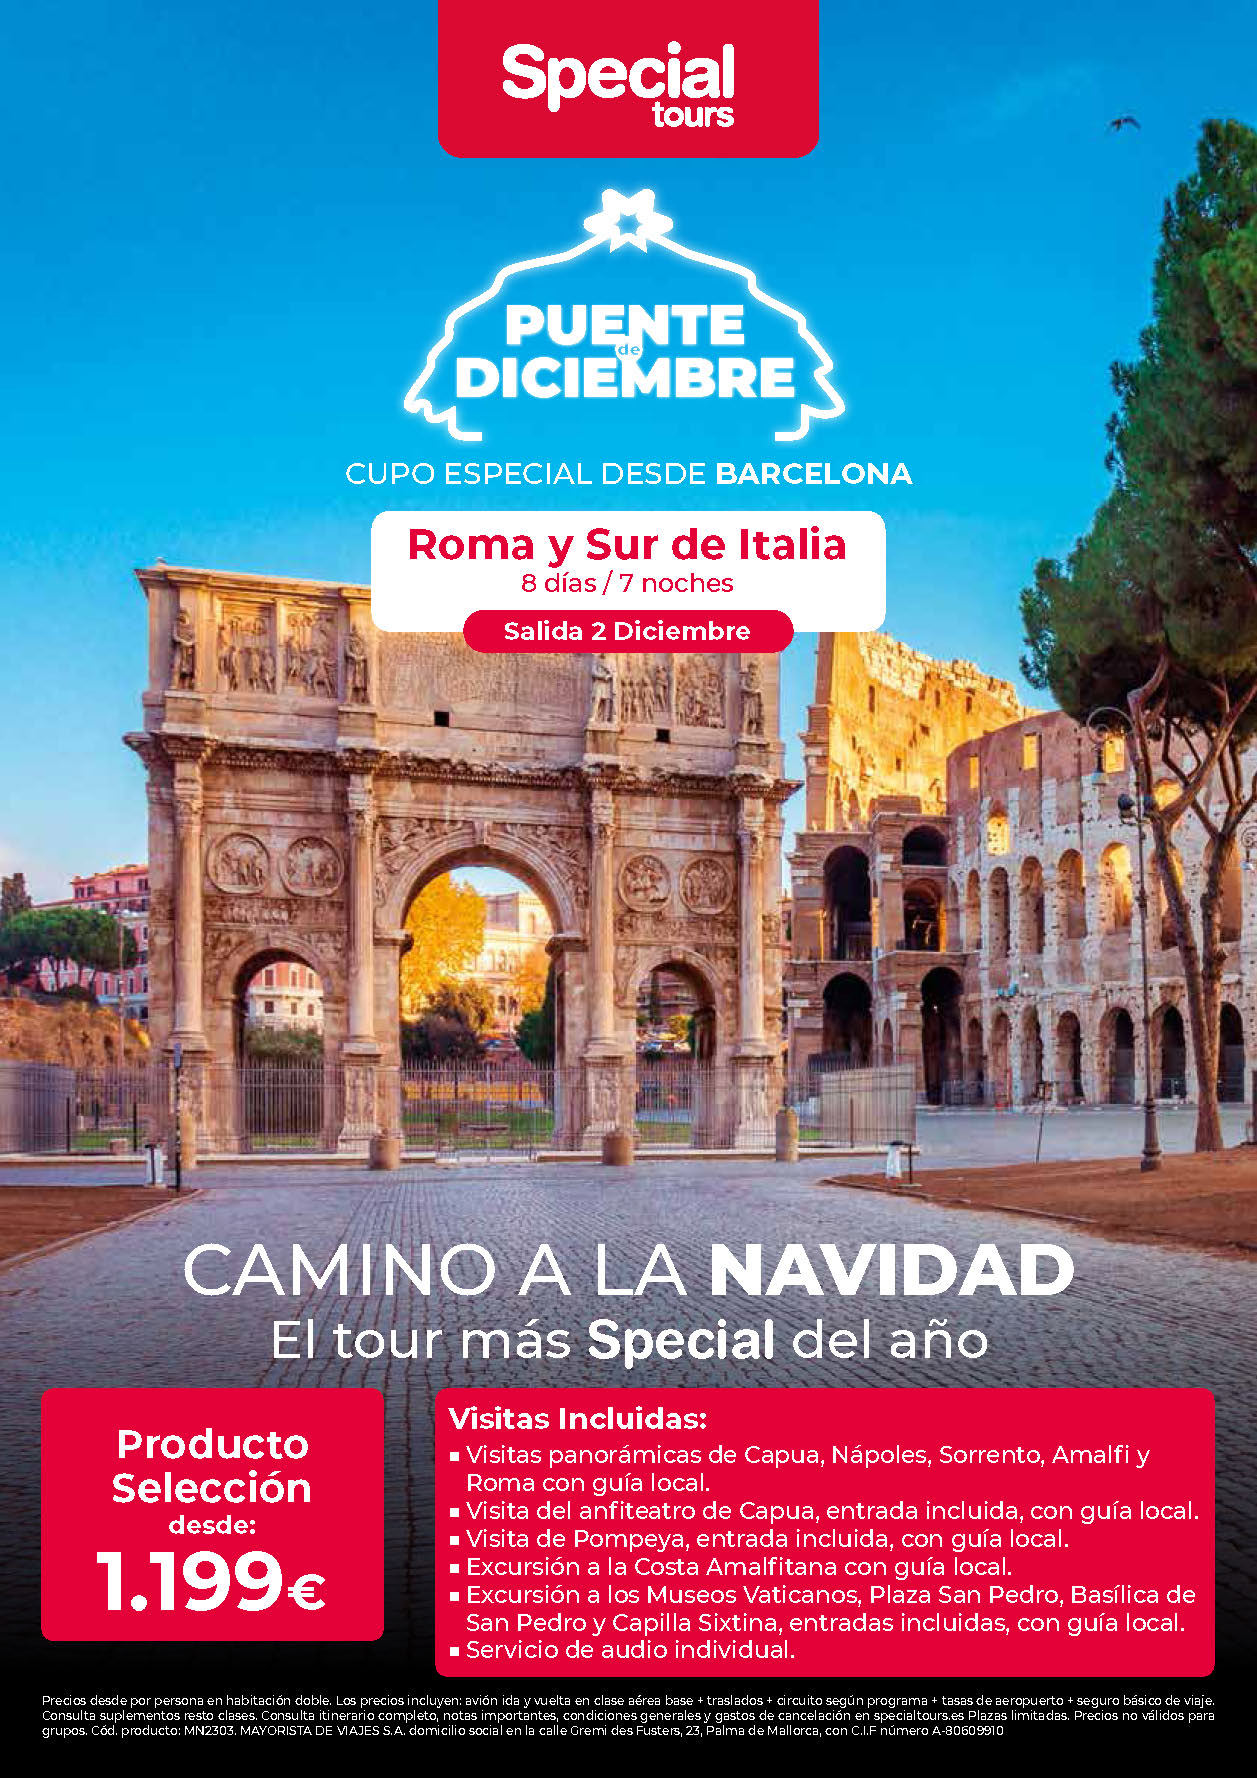 Oferta Special Tours Puente de Diciembre Roma y Sur de Italia 8 dias salida 2 Diciembre vuelo directo desde Barcelona